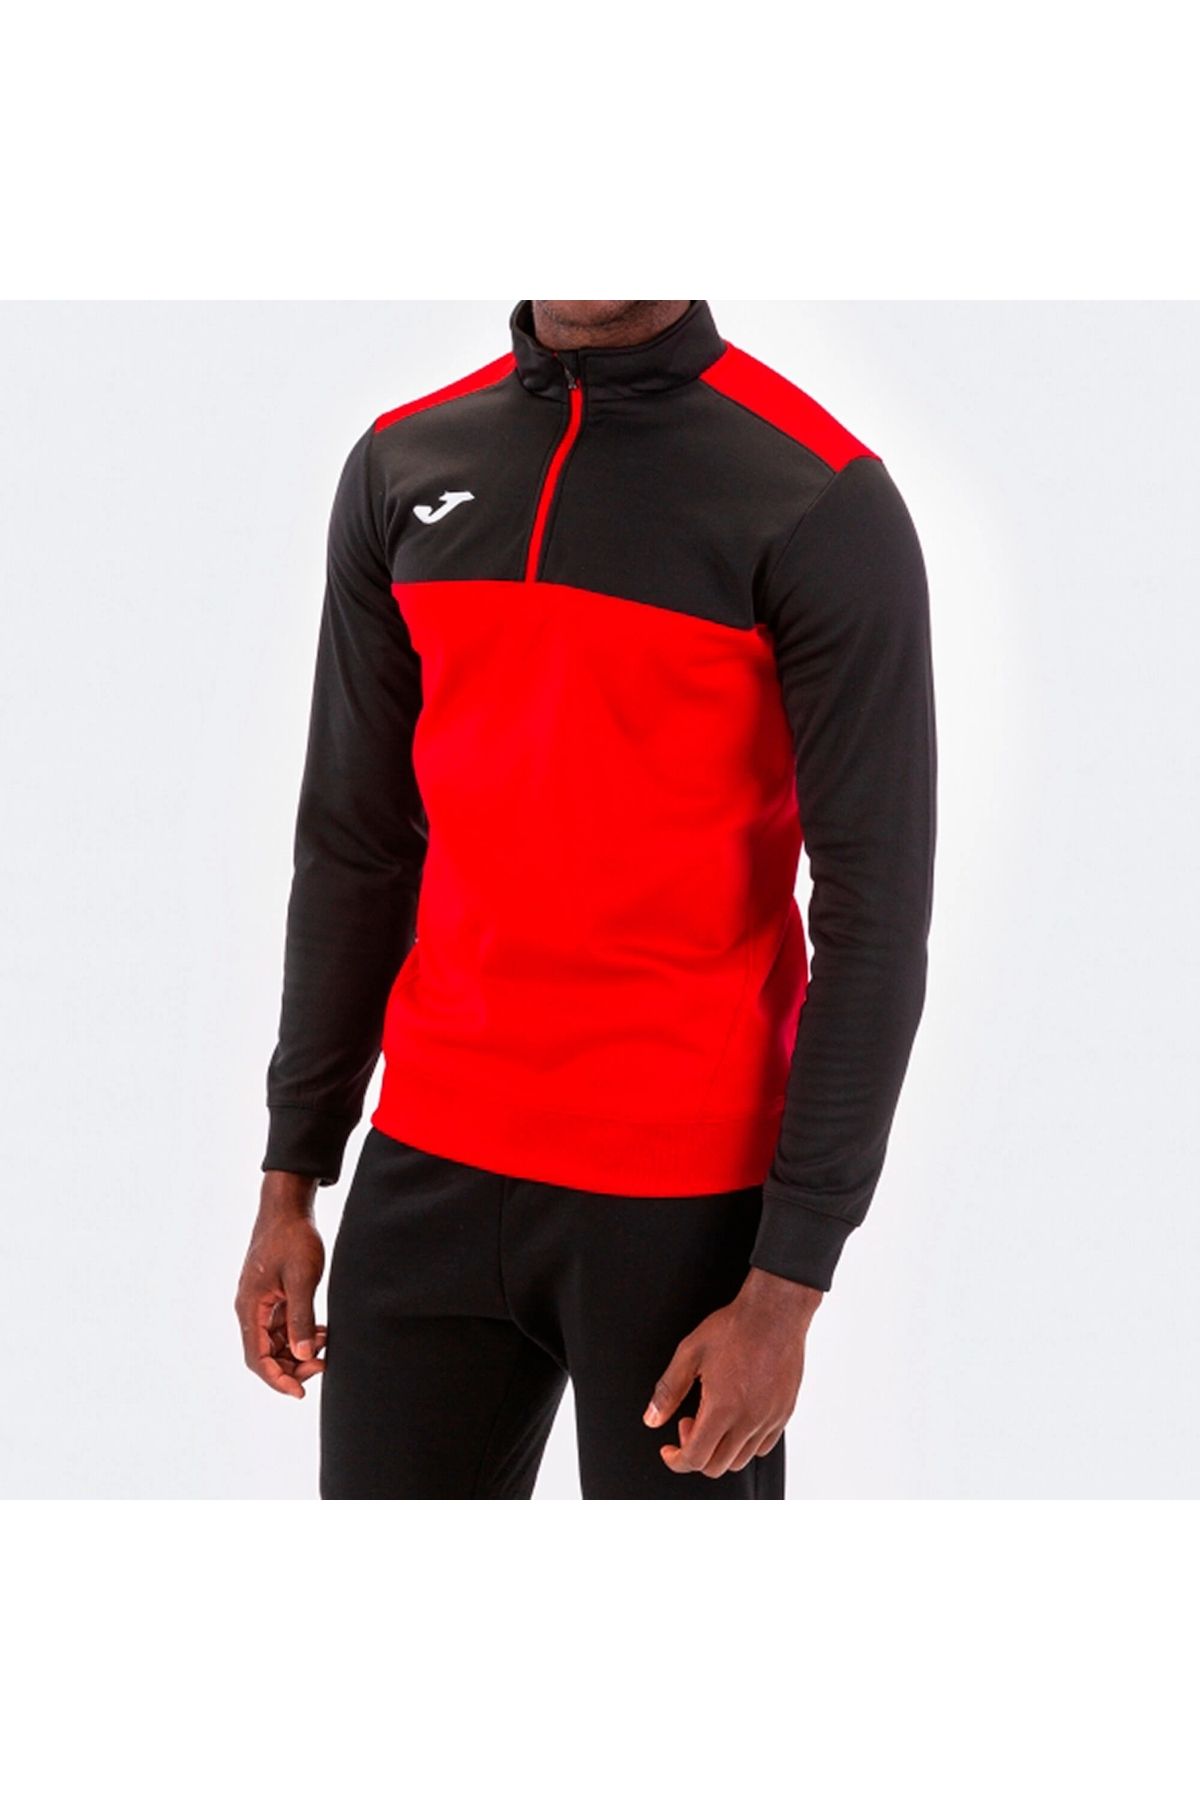 Joma Sweatshirt Winner Kırmızı Siyah